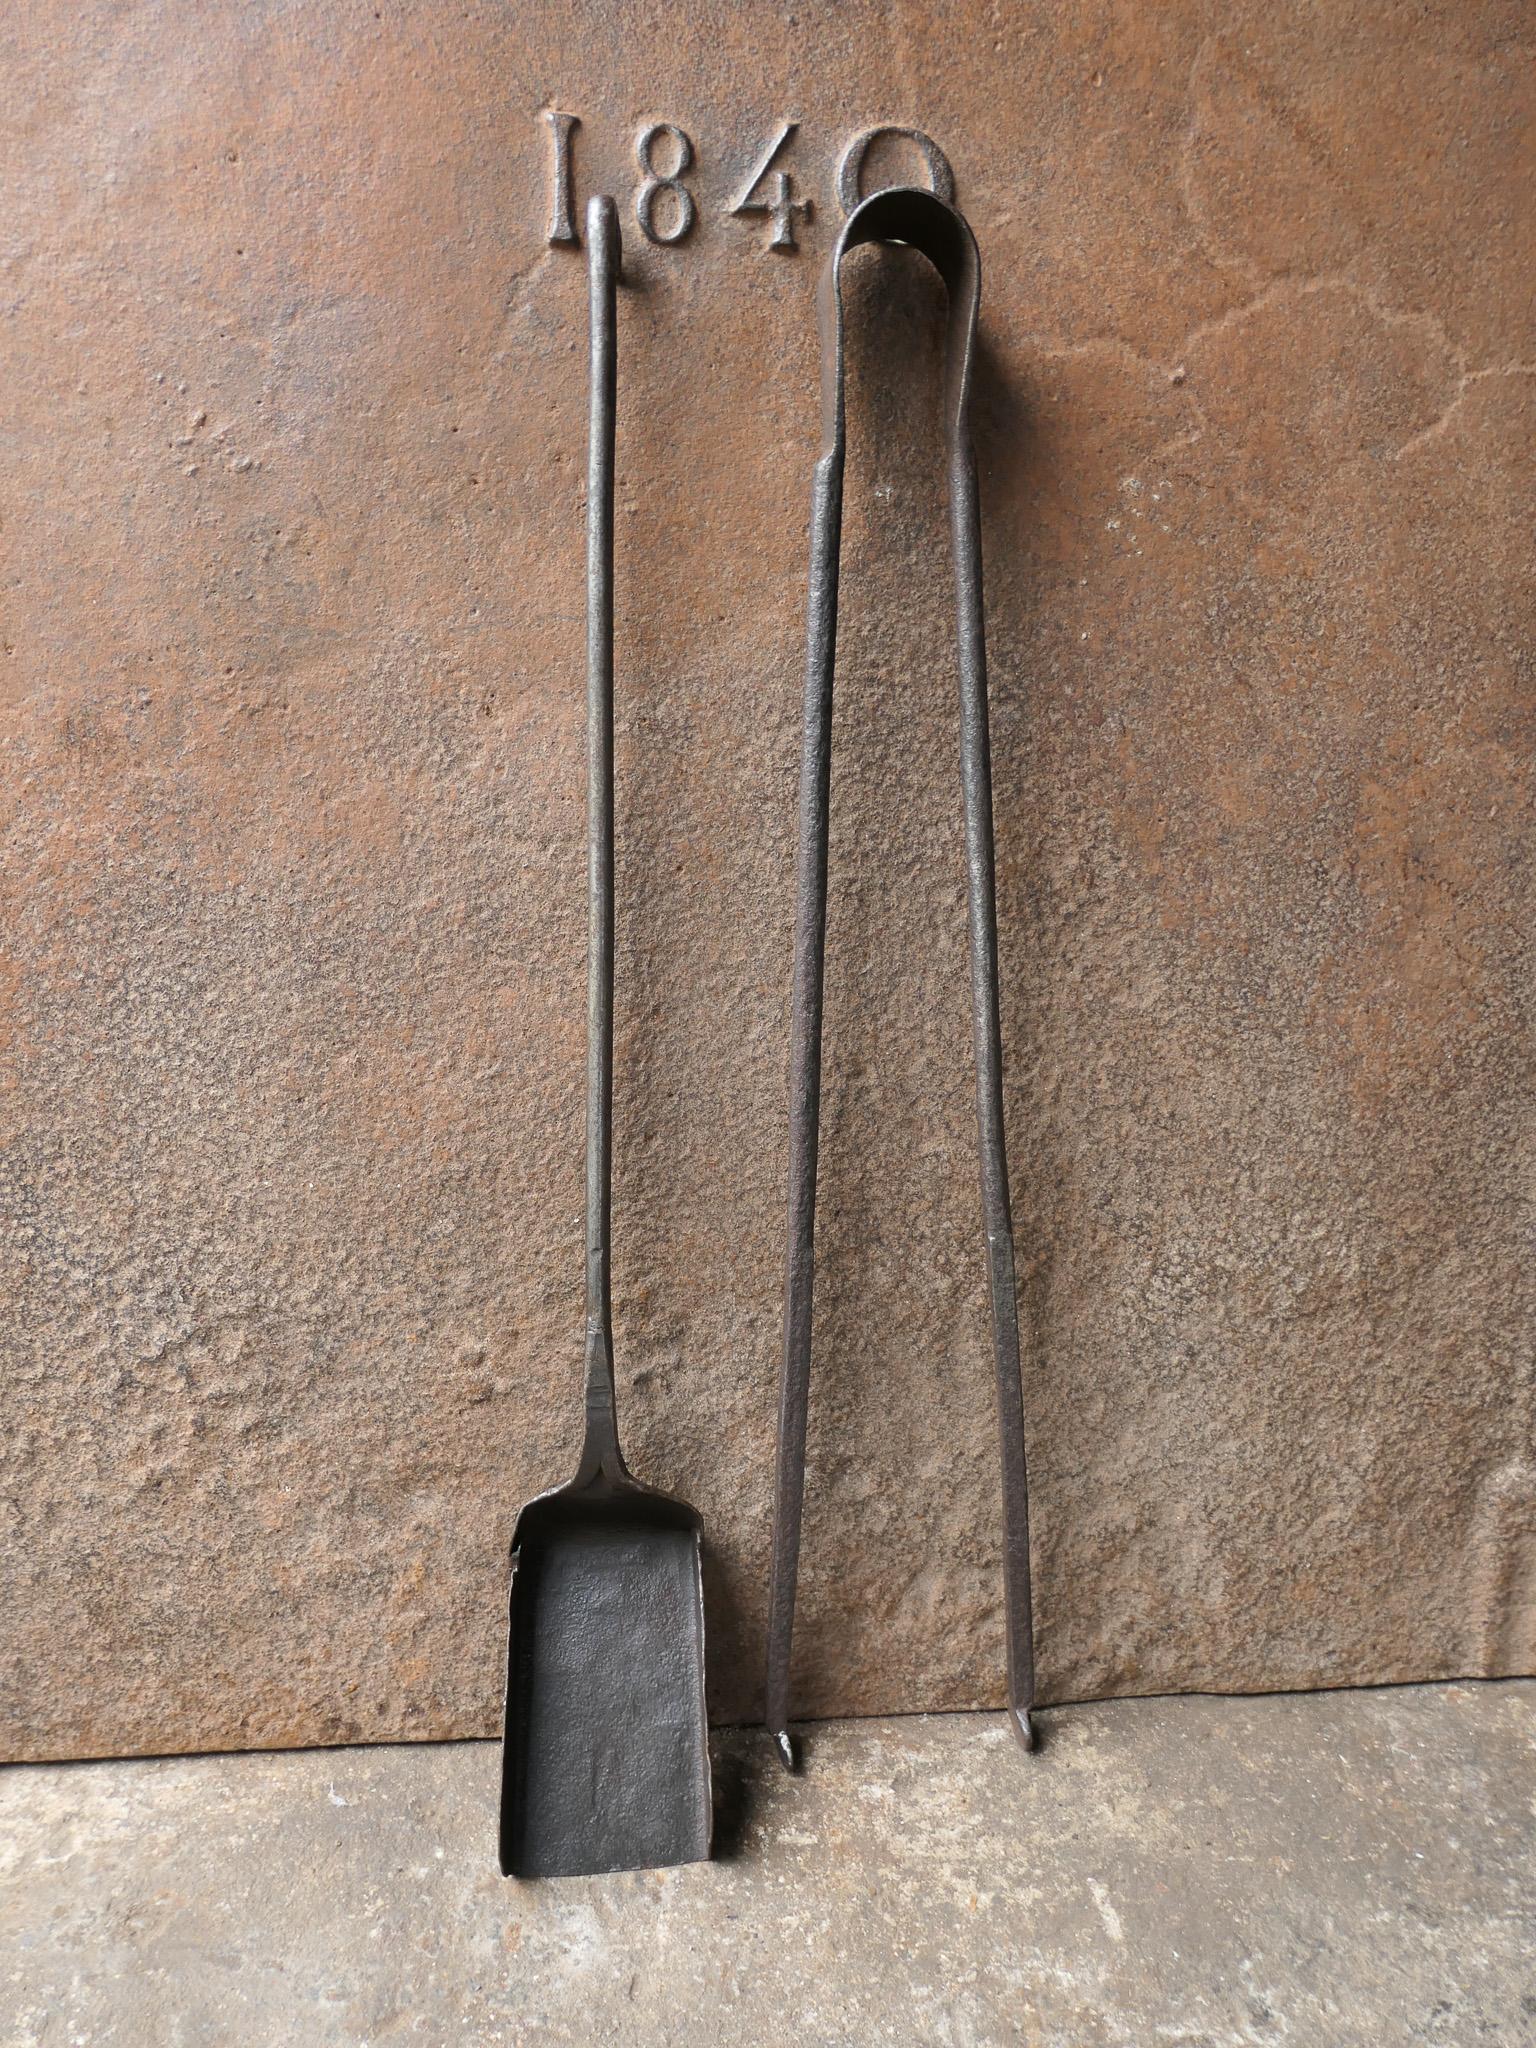 Ensemble d'outils de cheminée rustique français des 17e et 18e siècles. Le set d'outils se compose d'une pince à cheminée et d'une pelle. Les outils sont en fer forgé. L'ensemble est en bon état et apte à être utilisé dans la cheminée.